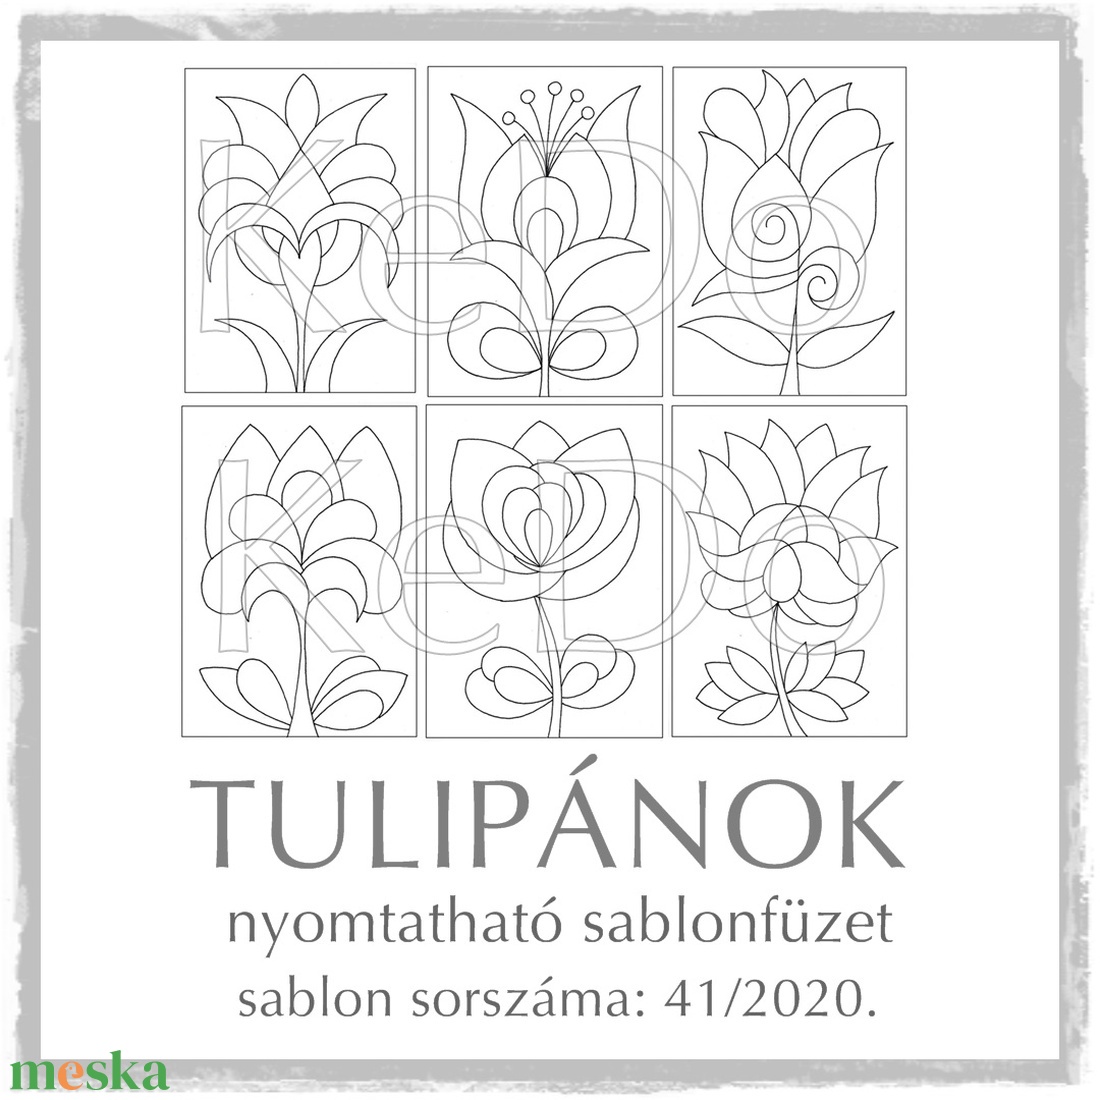 Tulipános sablonfüzet - 41/2020 -  - Meska.hu